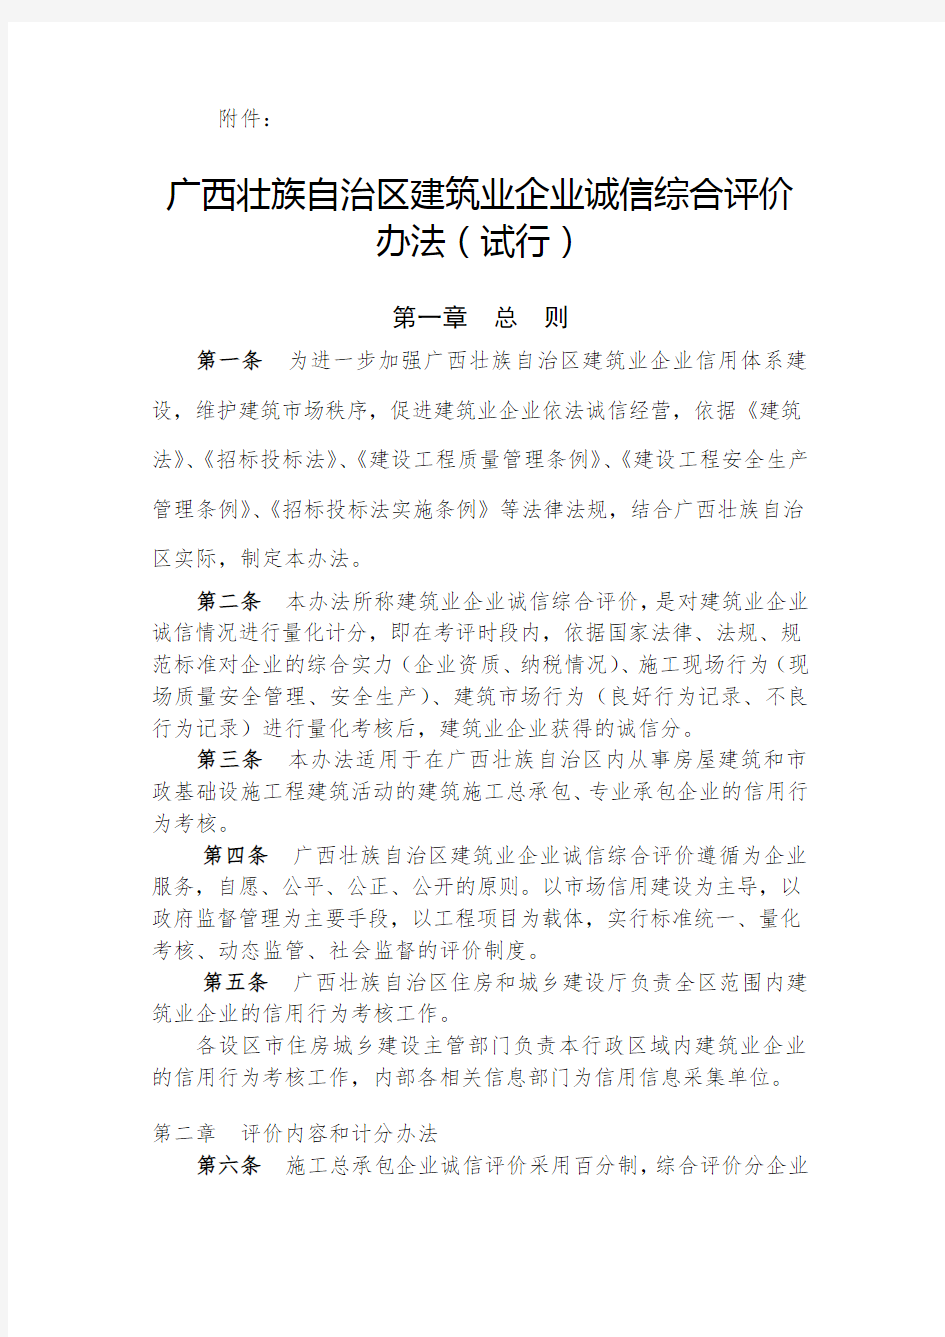 广西壮族自治区建筑业企业诚信综合评价办法(试行)